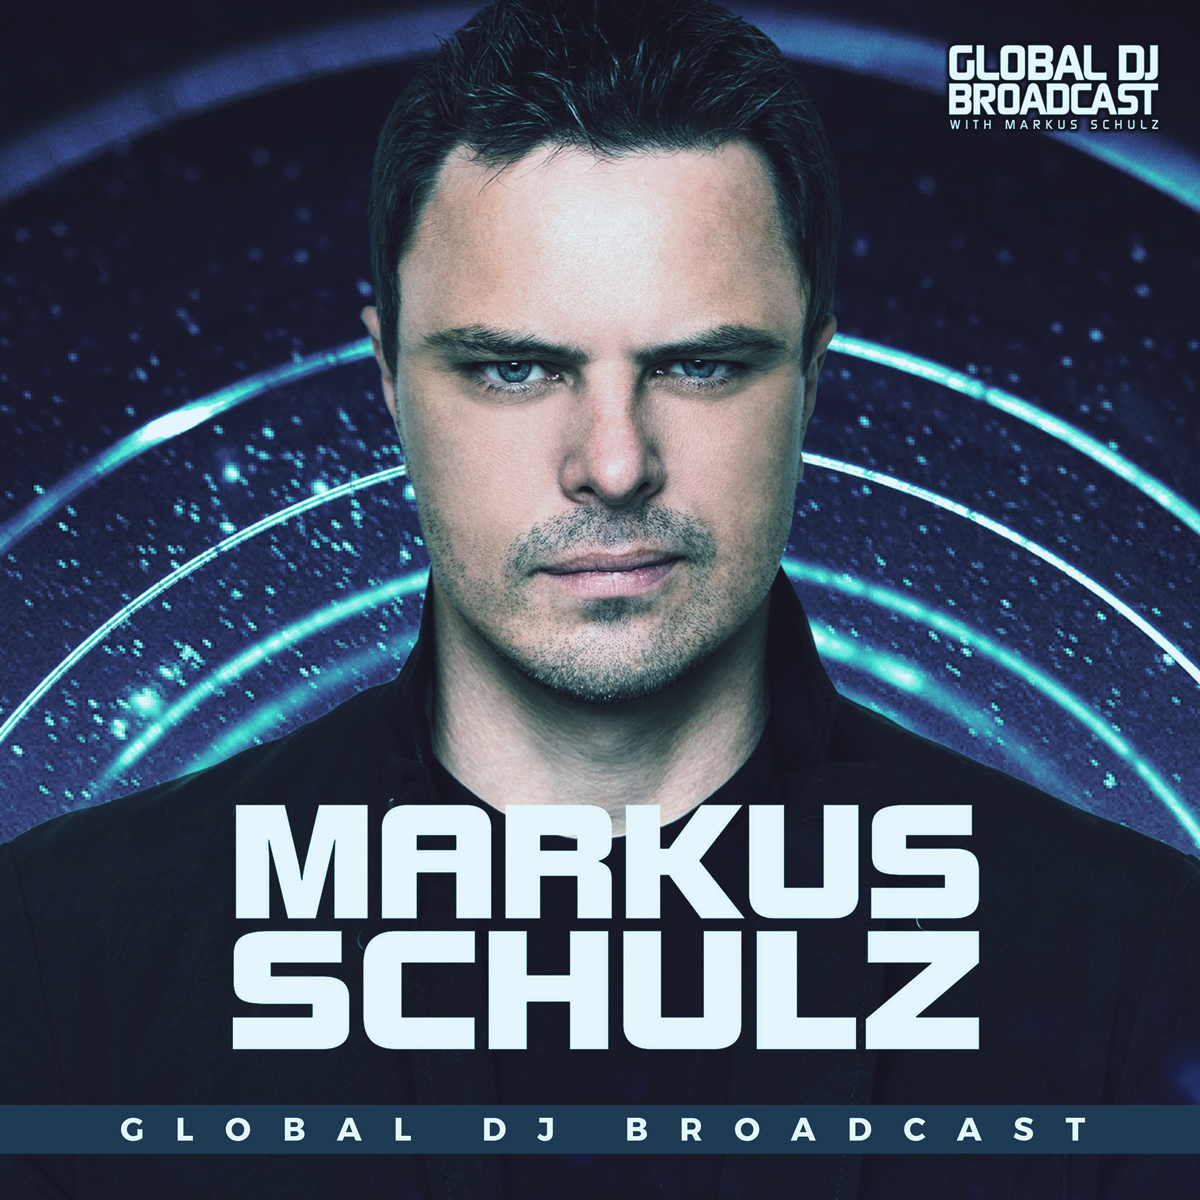 Global DJ Broadcast: Markus Schulz and Giuseppe Ottaviani (Sep 29 2016)